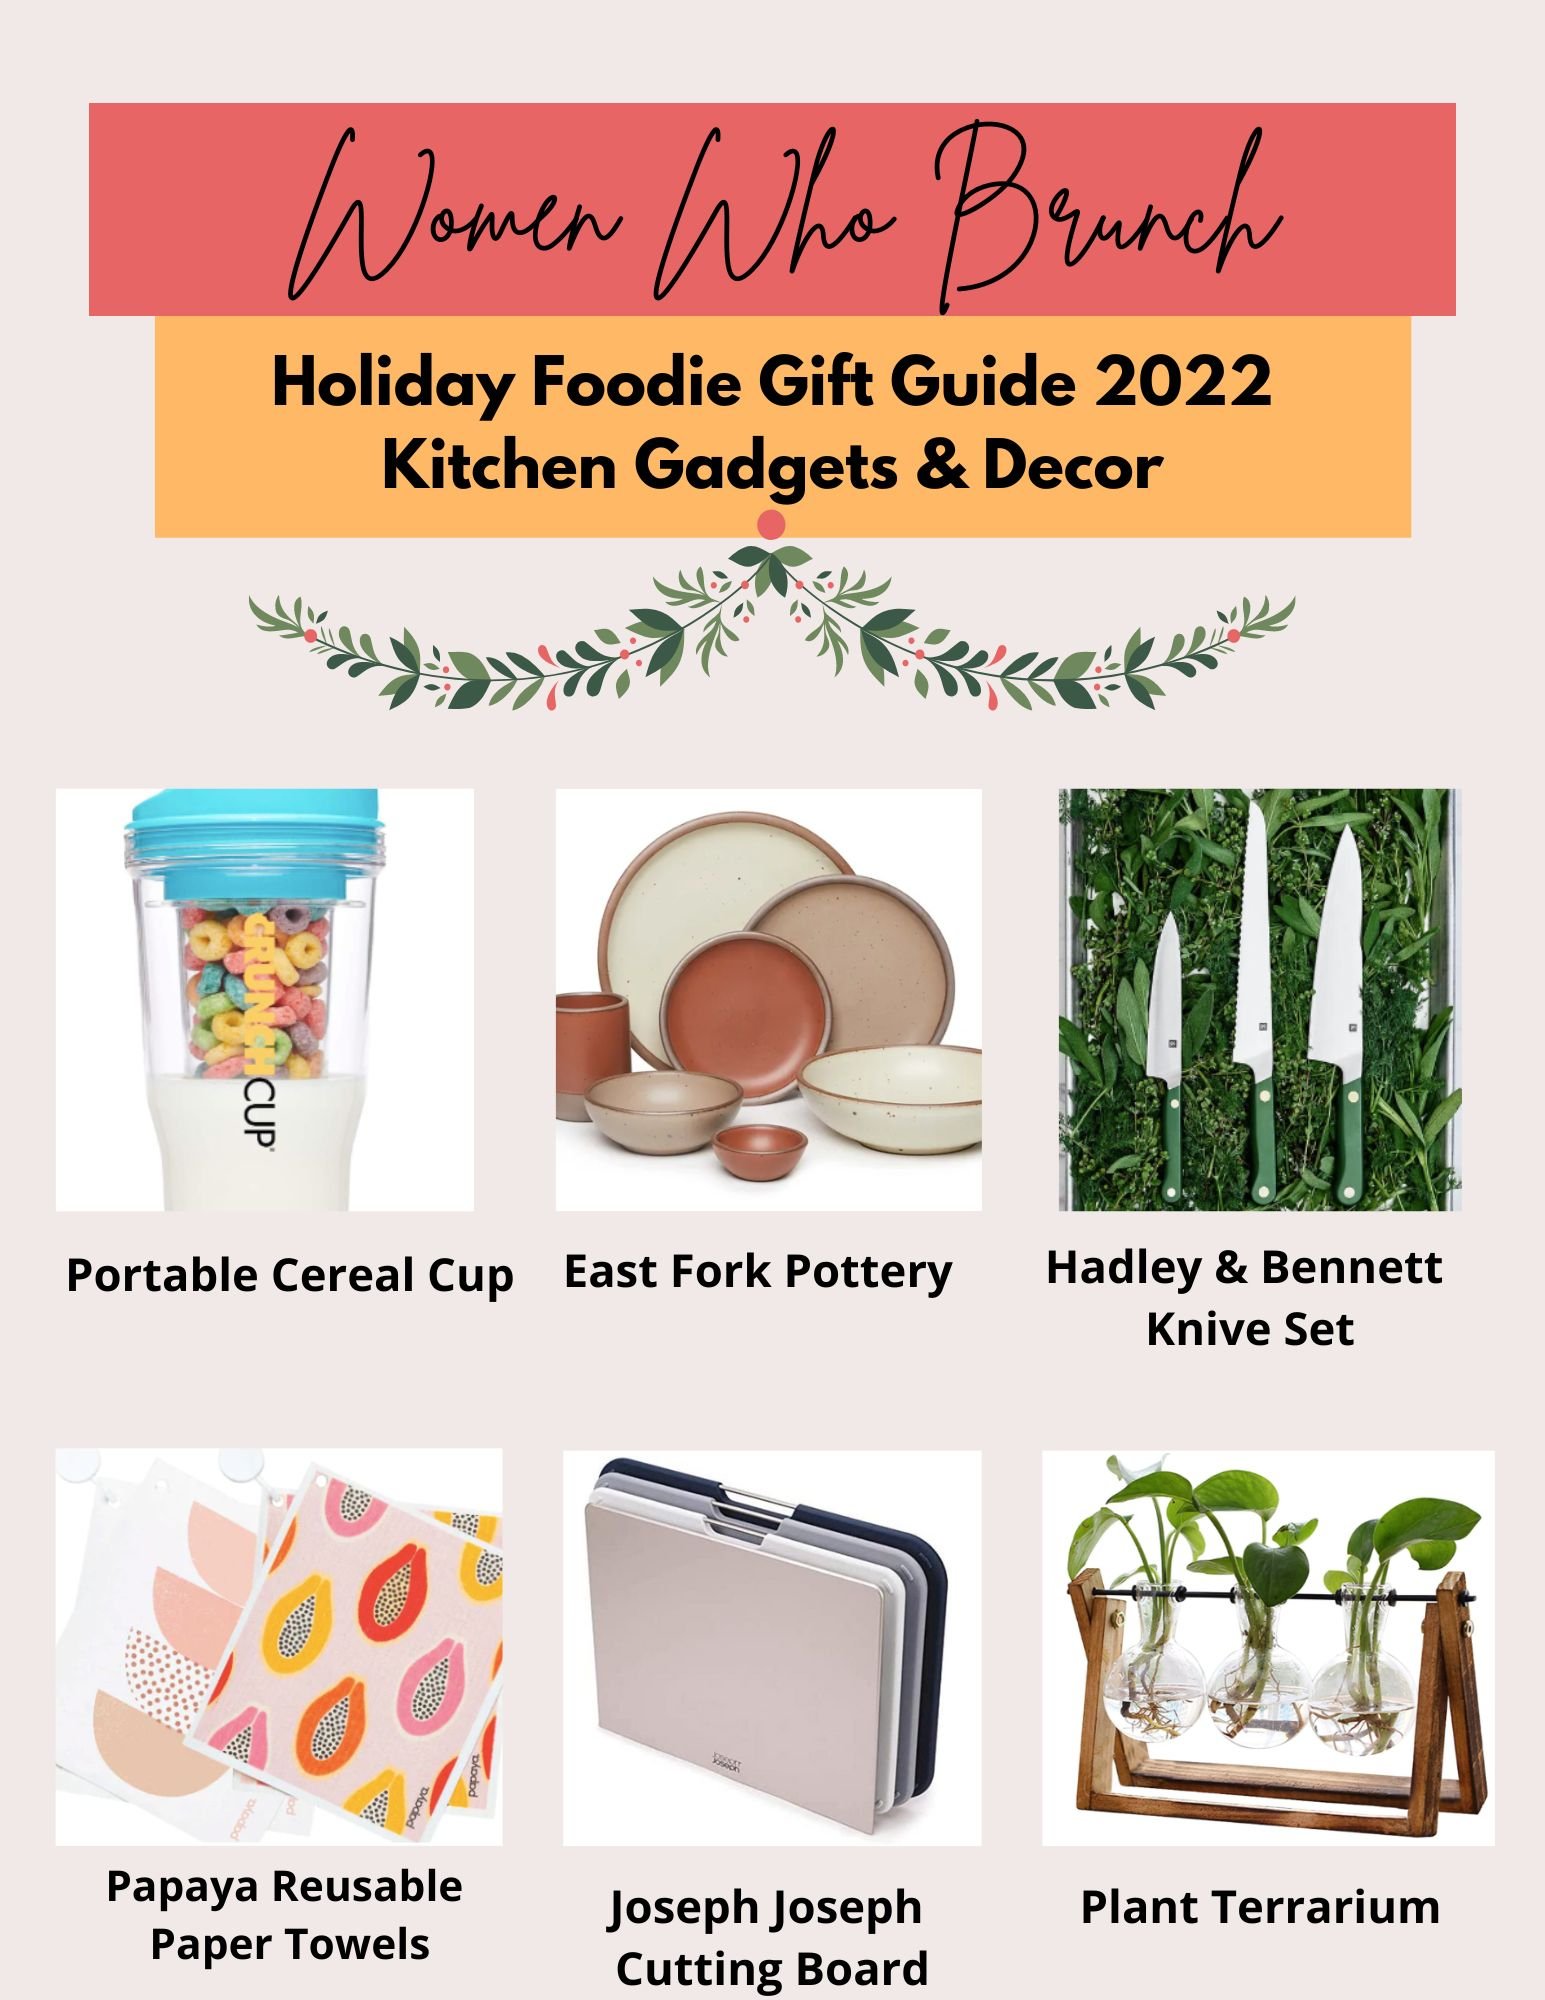 https://images.squarespace-cdn.com/content/v1/5b5e17e9620b85a43982f350/1667960075808-0BH2U3U3OD0DASXHZ8BY/2022+Holiday+Food+Gift+Guide+Gadgets+Deco+Kitchen.jpg